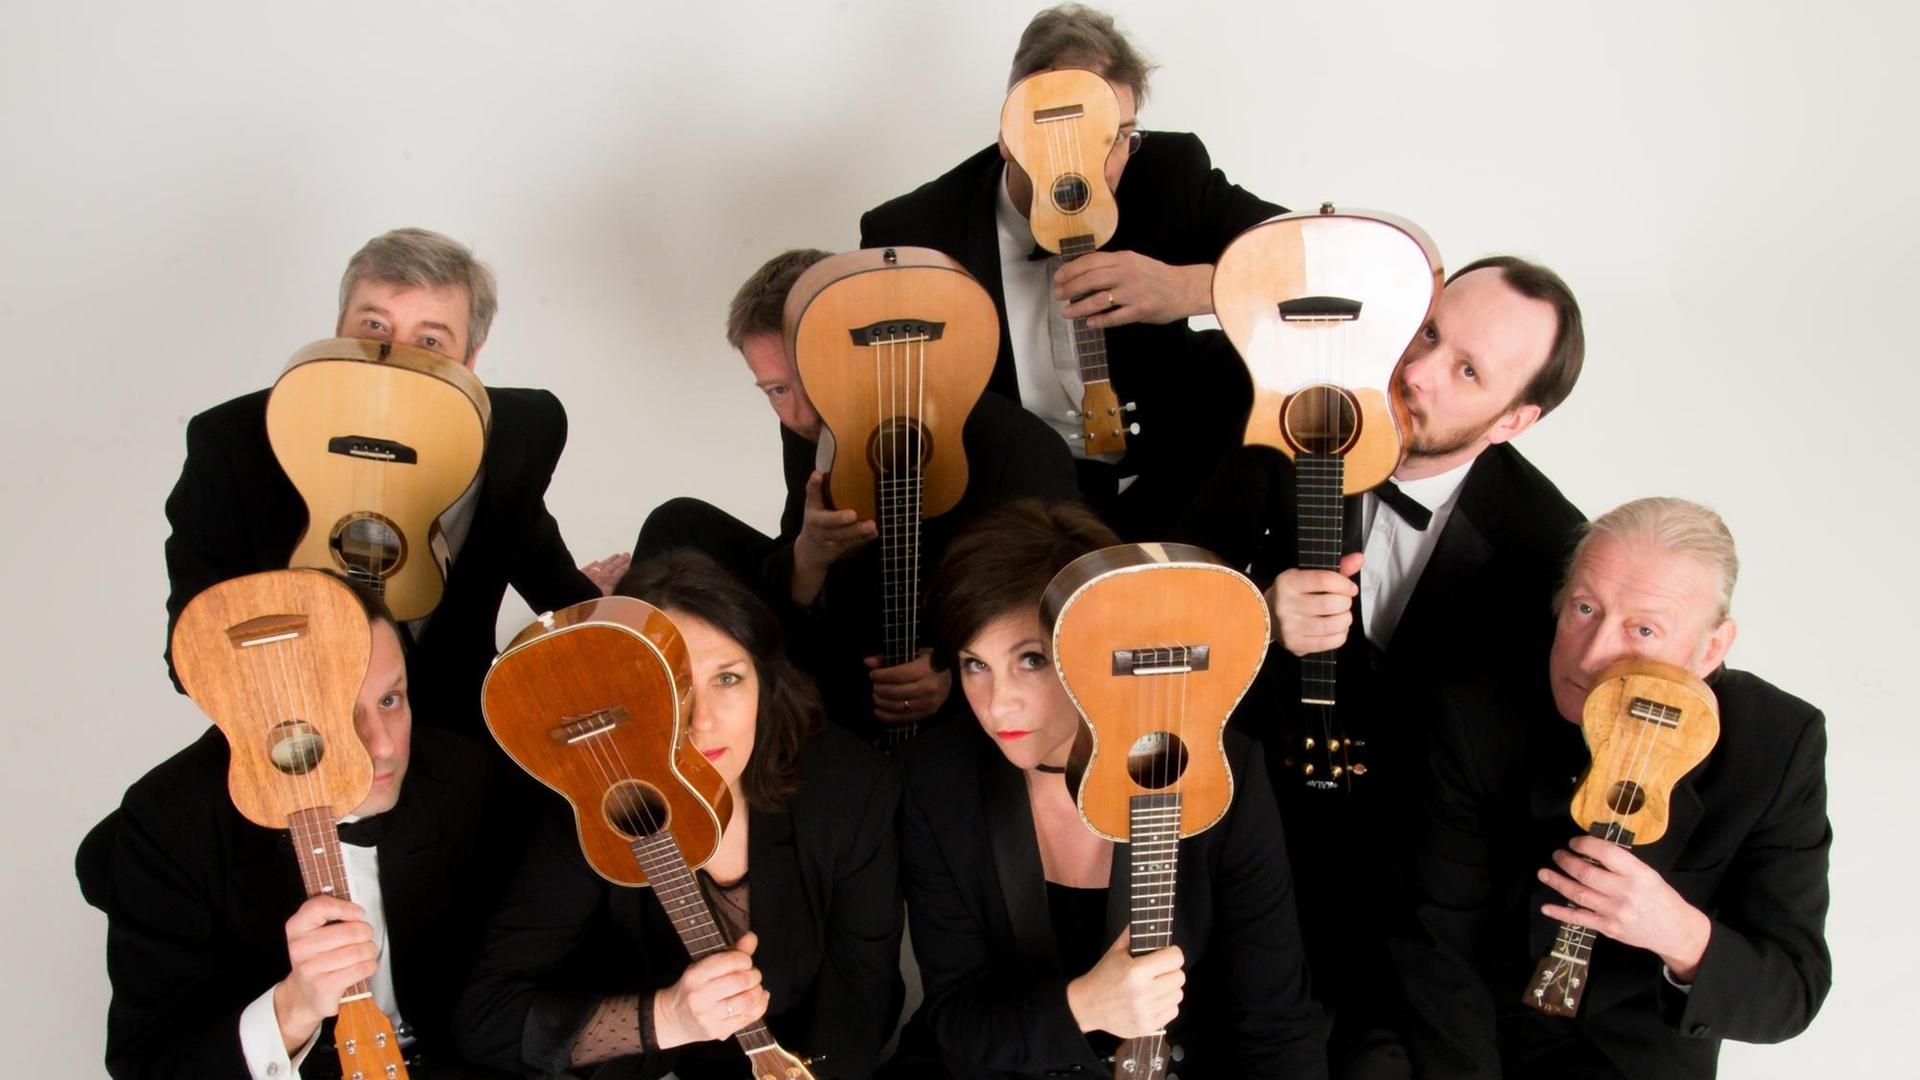 Die Mitglieder des Ukulele Orchestra of Great Britian stehend und sitzend und schwarz gekleidet verdecken mit ihren Instrumenten die Hälfte ihrer Gesichter.